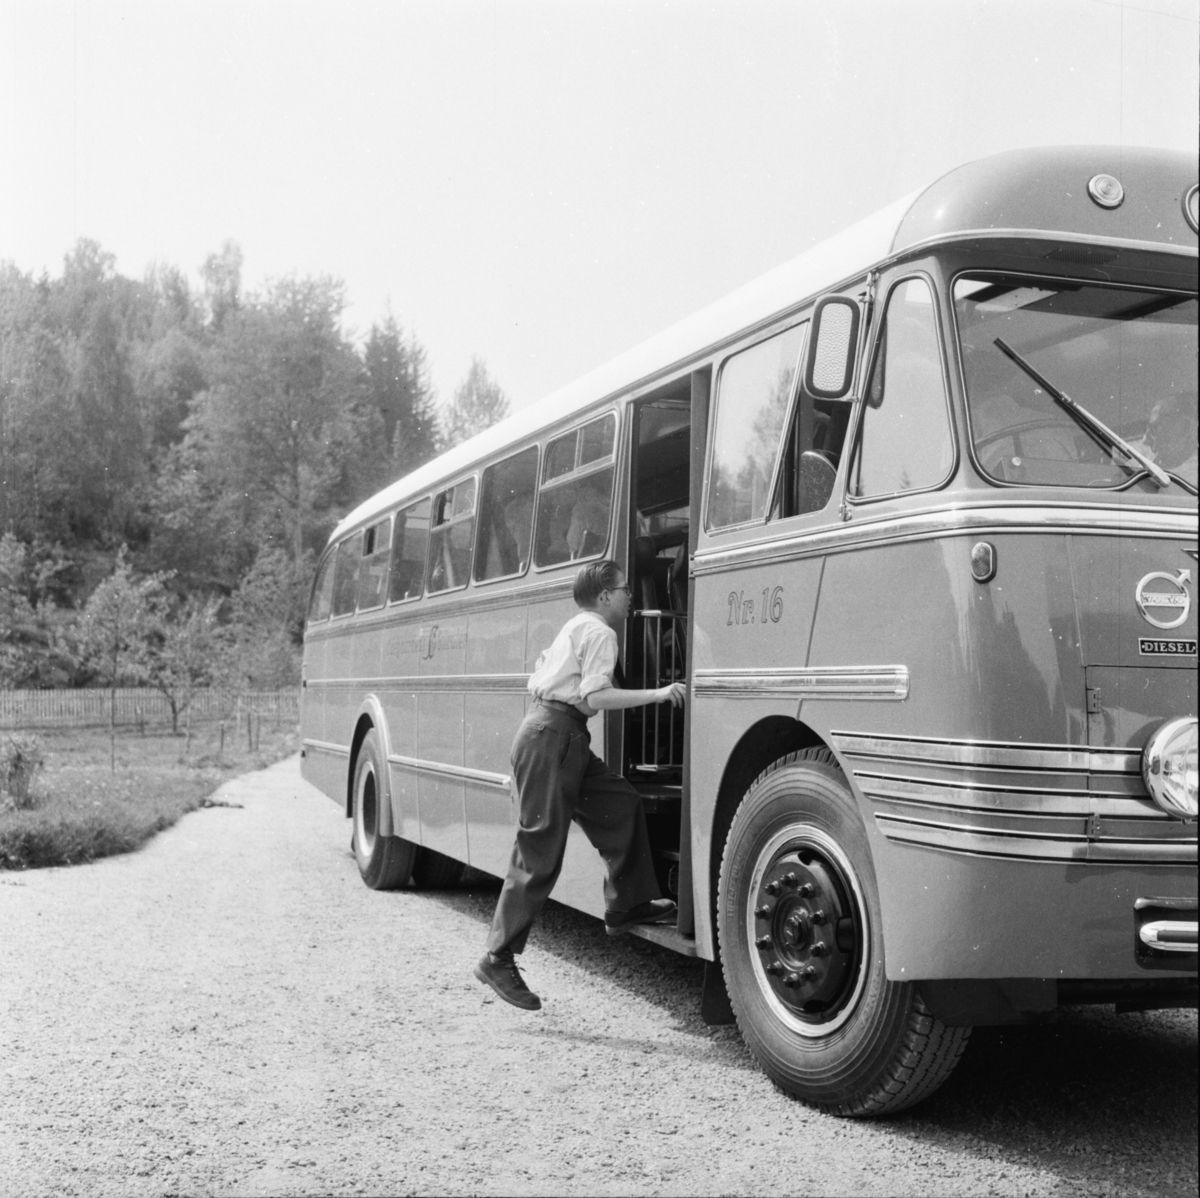 Vardens arkiv. "Ødegårdens nye kontinentalbuss"  30.05.1954

Bussen har skiltnummer H-2426. Teksten "Volvo-diesel" står skrevet over lykta